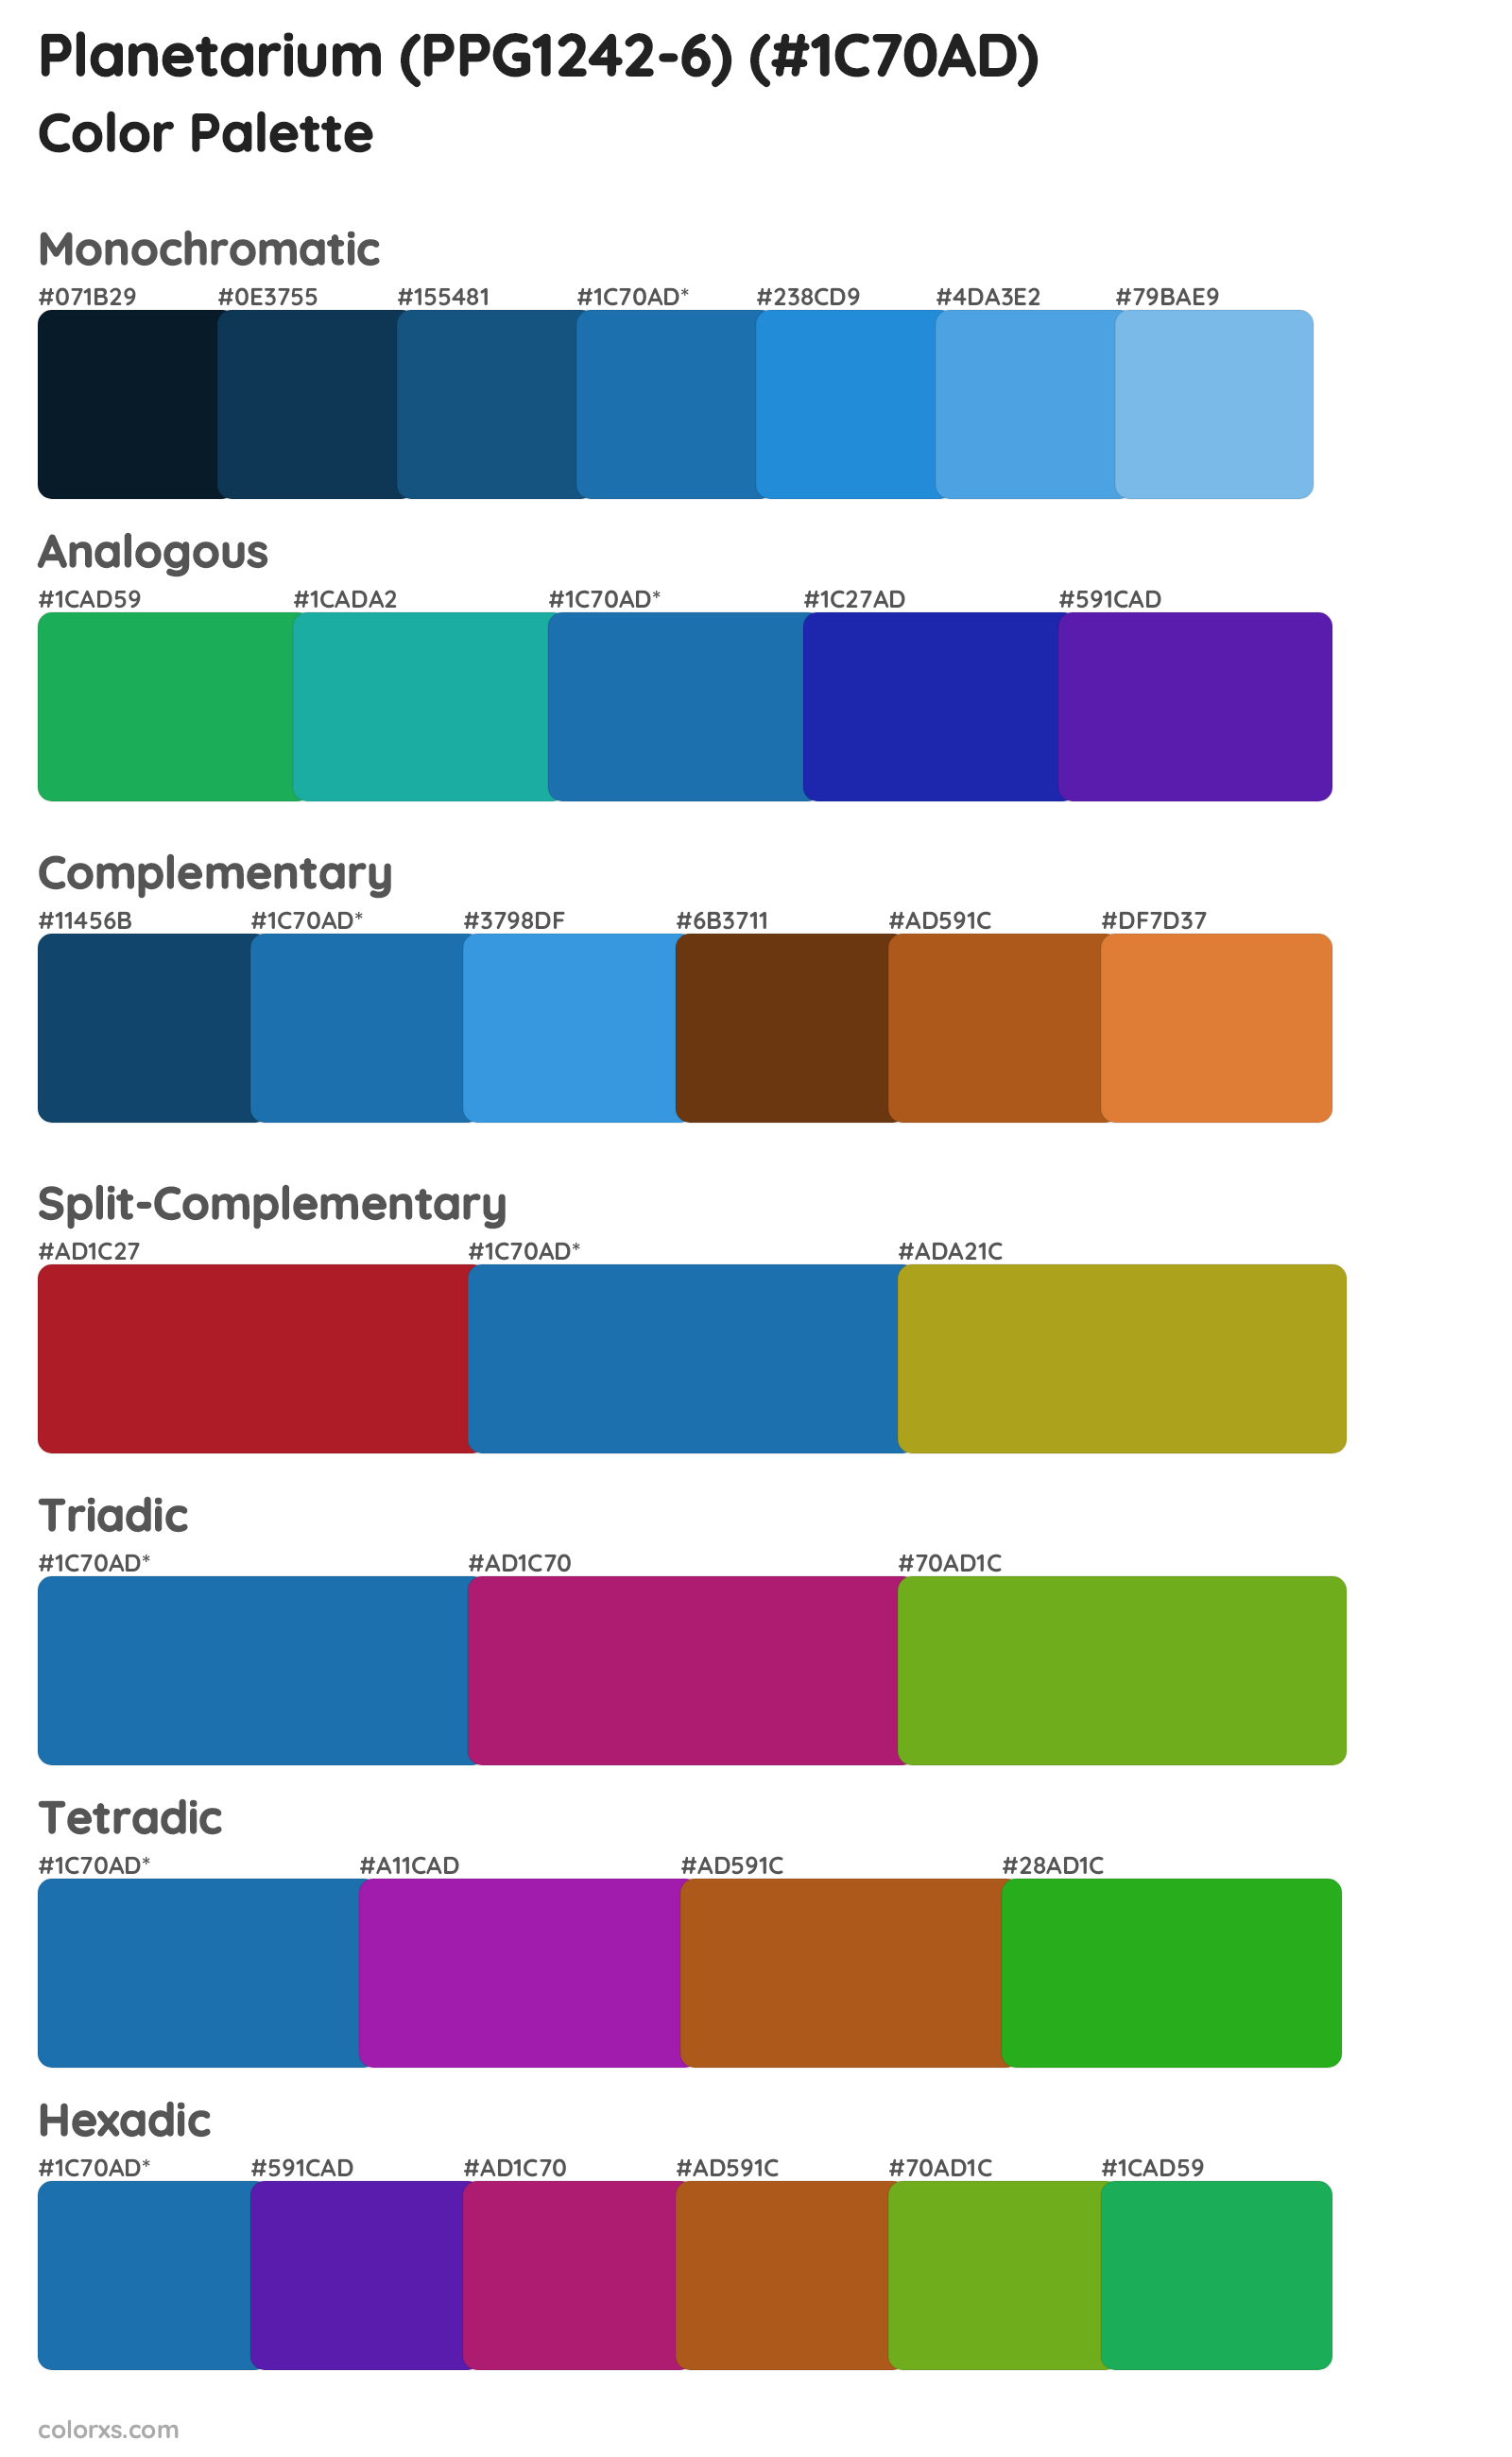 Planetarium (PPG1242-6) Color Scheme Palettes